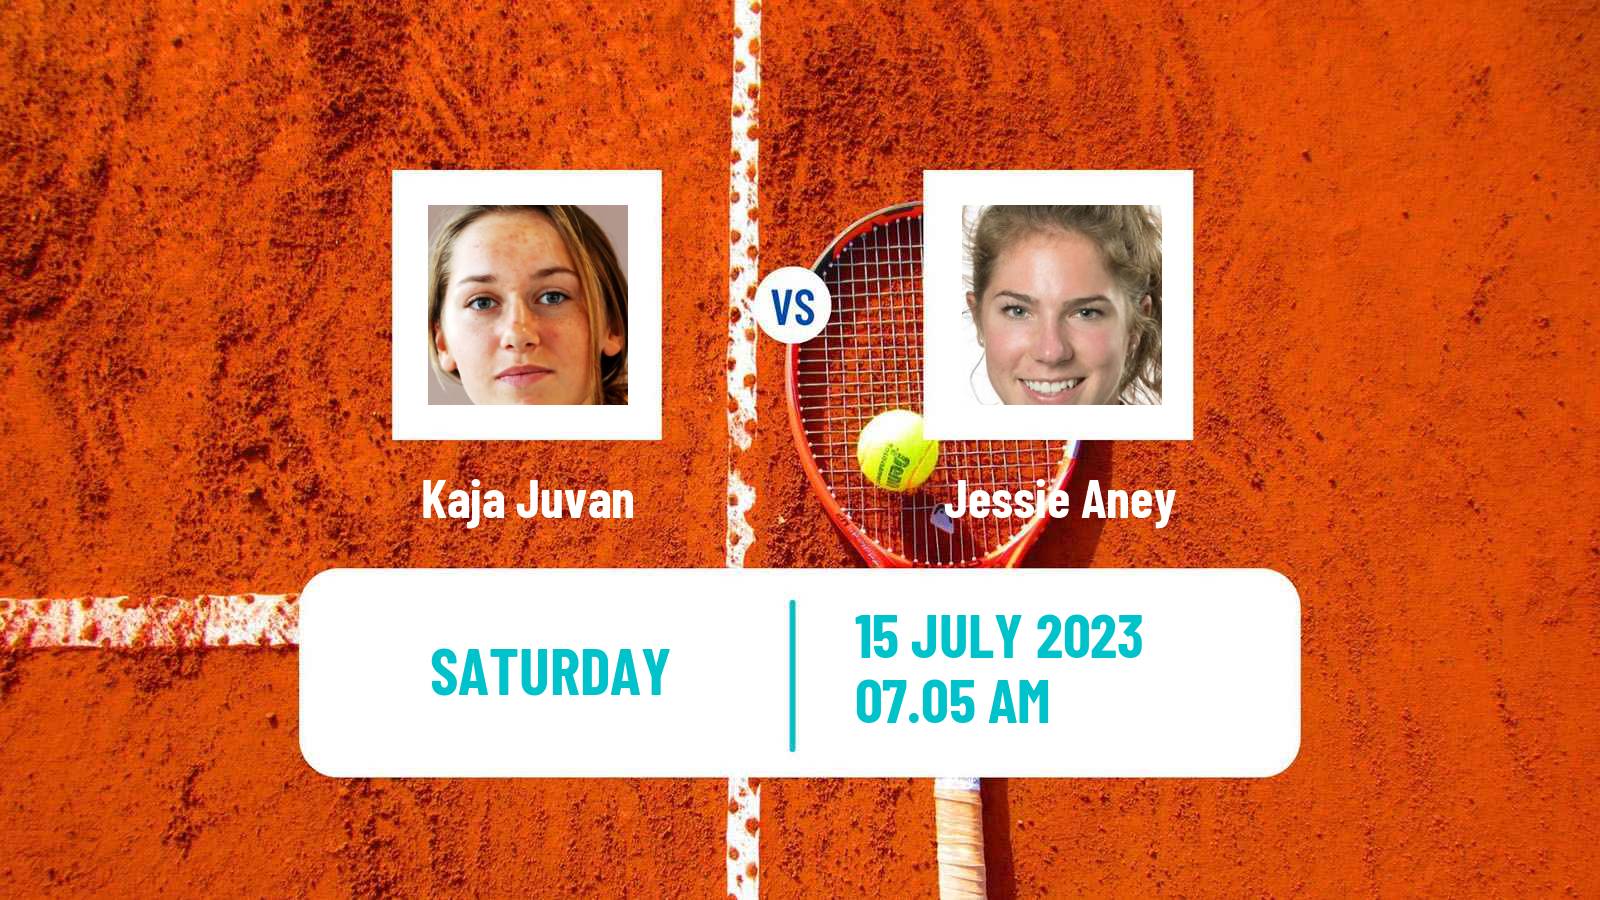 Tennis WTA Budapest Kaja Juvan - Jessie Aney